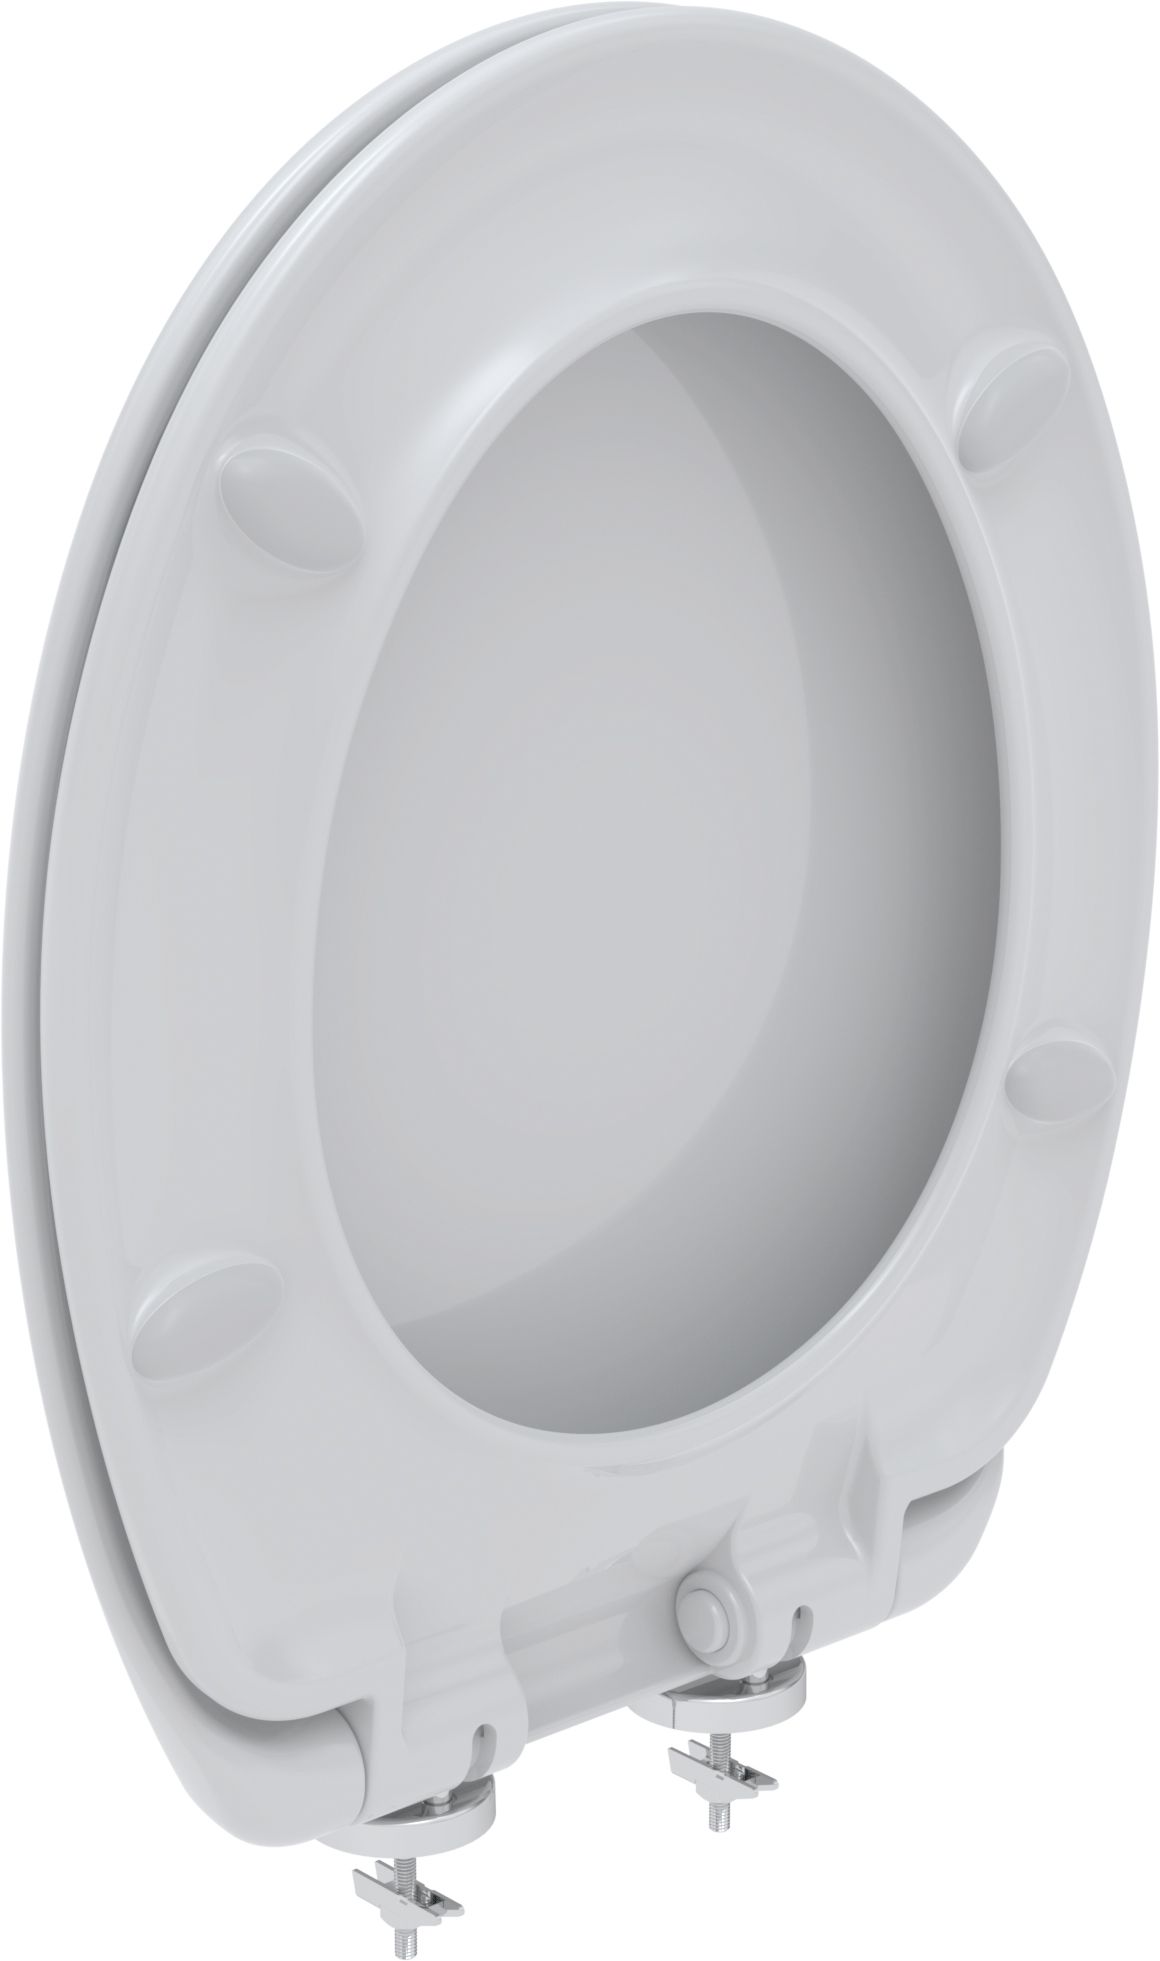 Toilet seat STAR, white